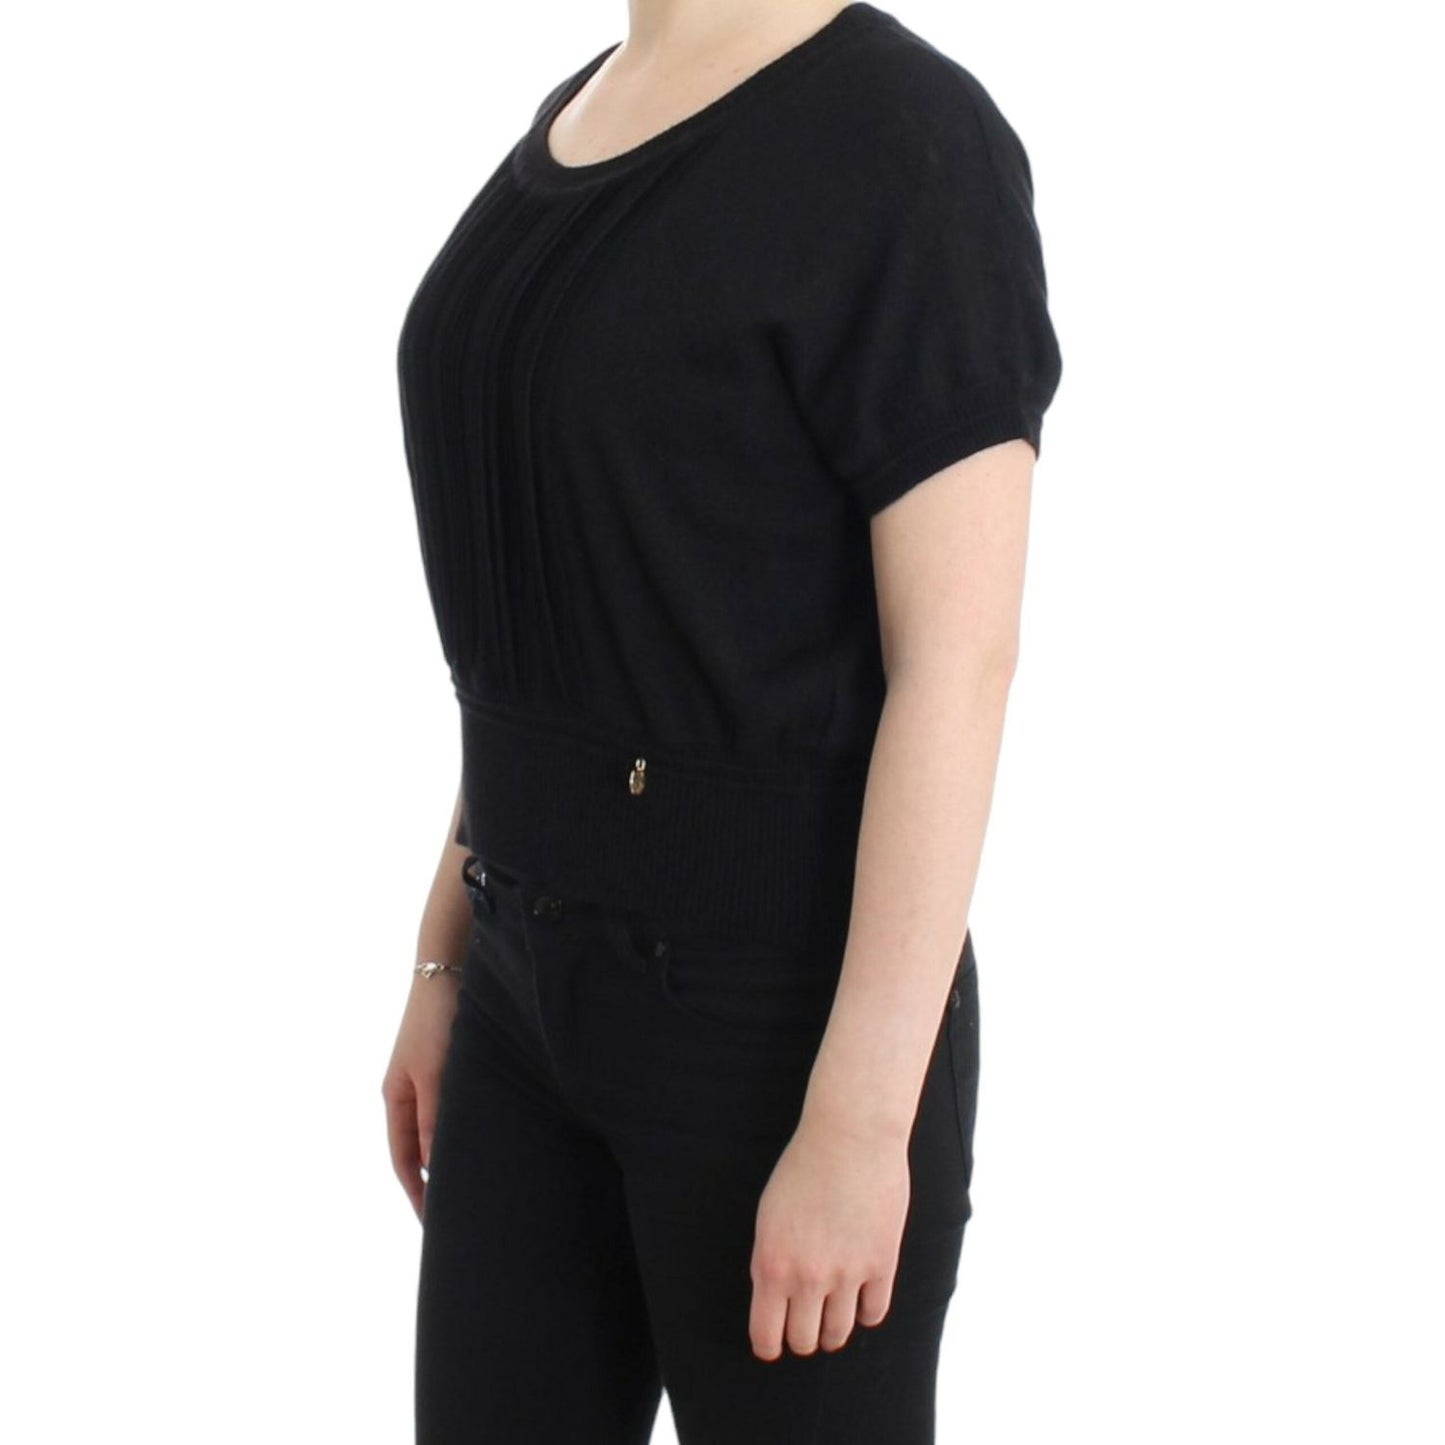 Cavalli Elegant Short Sleeved Black Jumper black-short-sleeved-jumper 9639-black-short-sleeved-jumper-2-1-scaled-e68f18c8-136.jpg